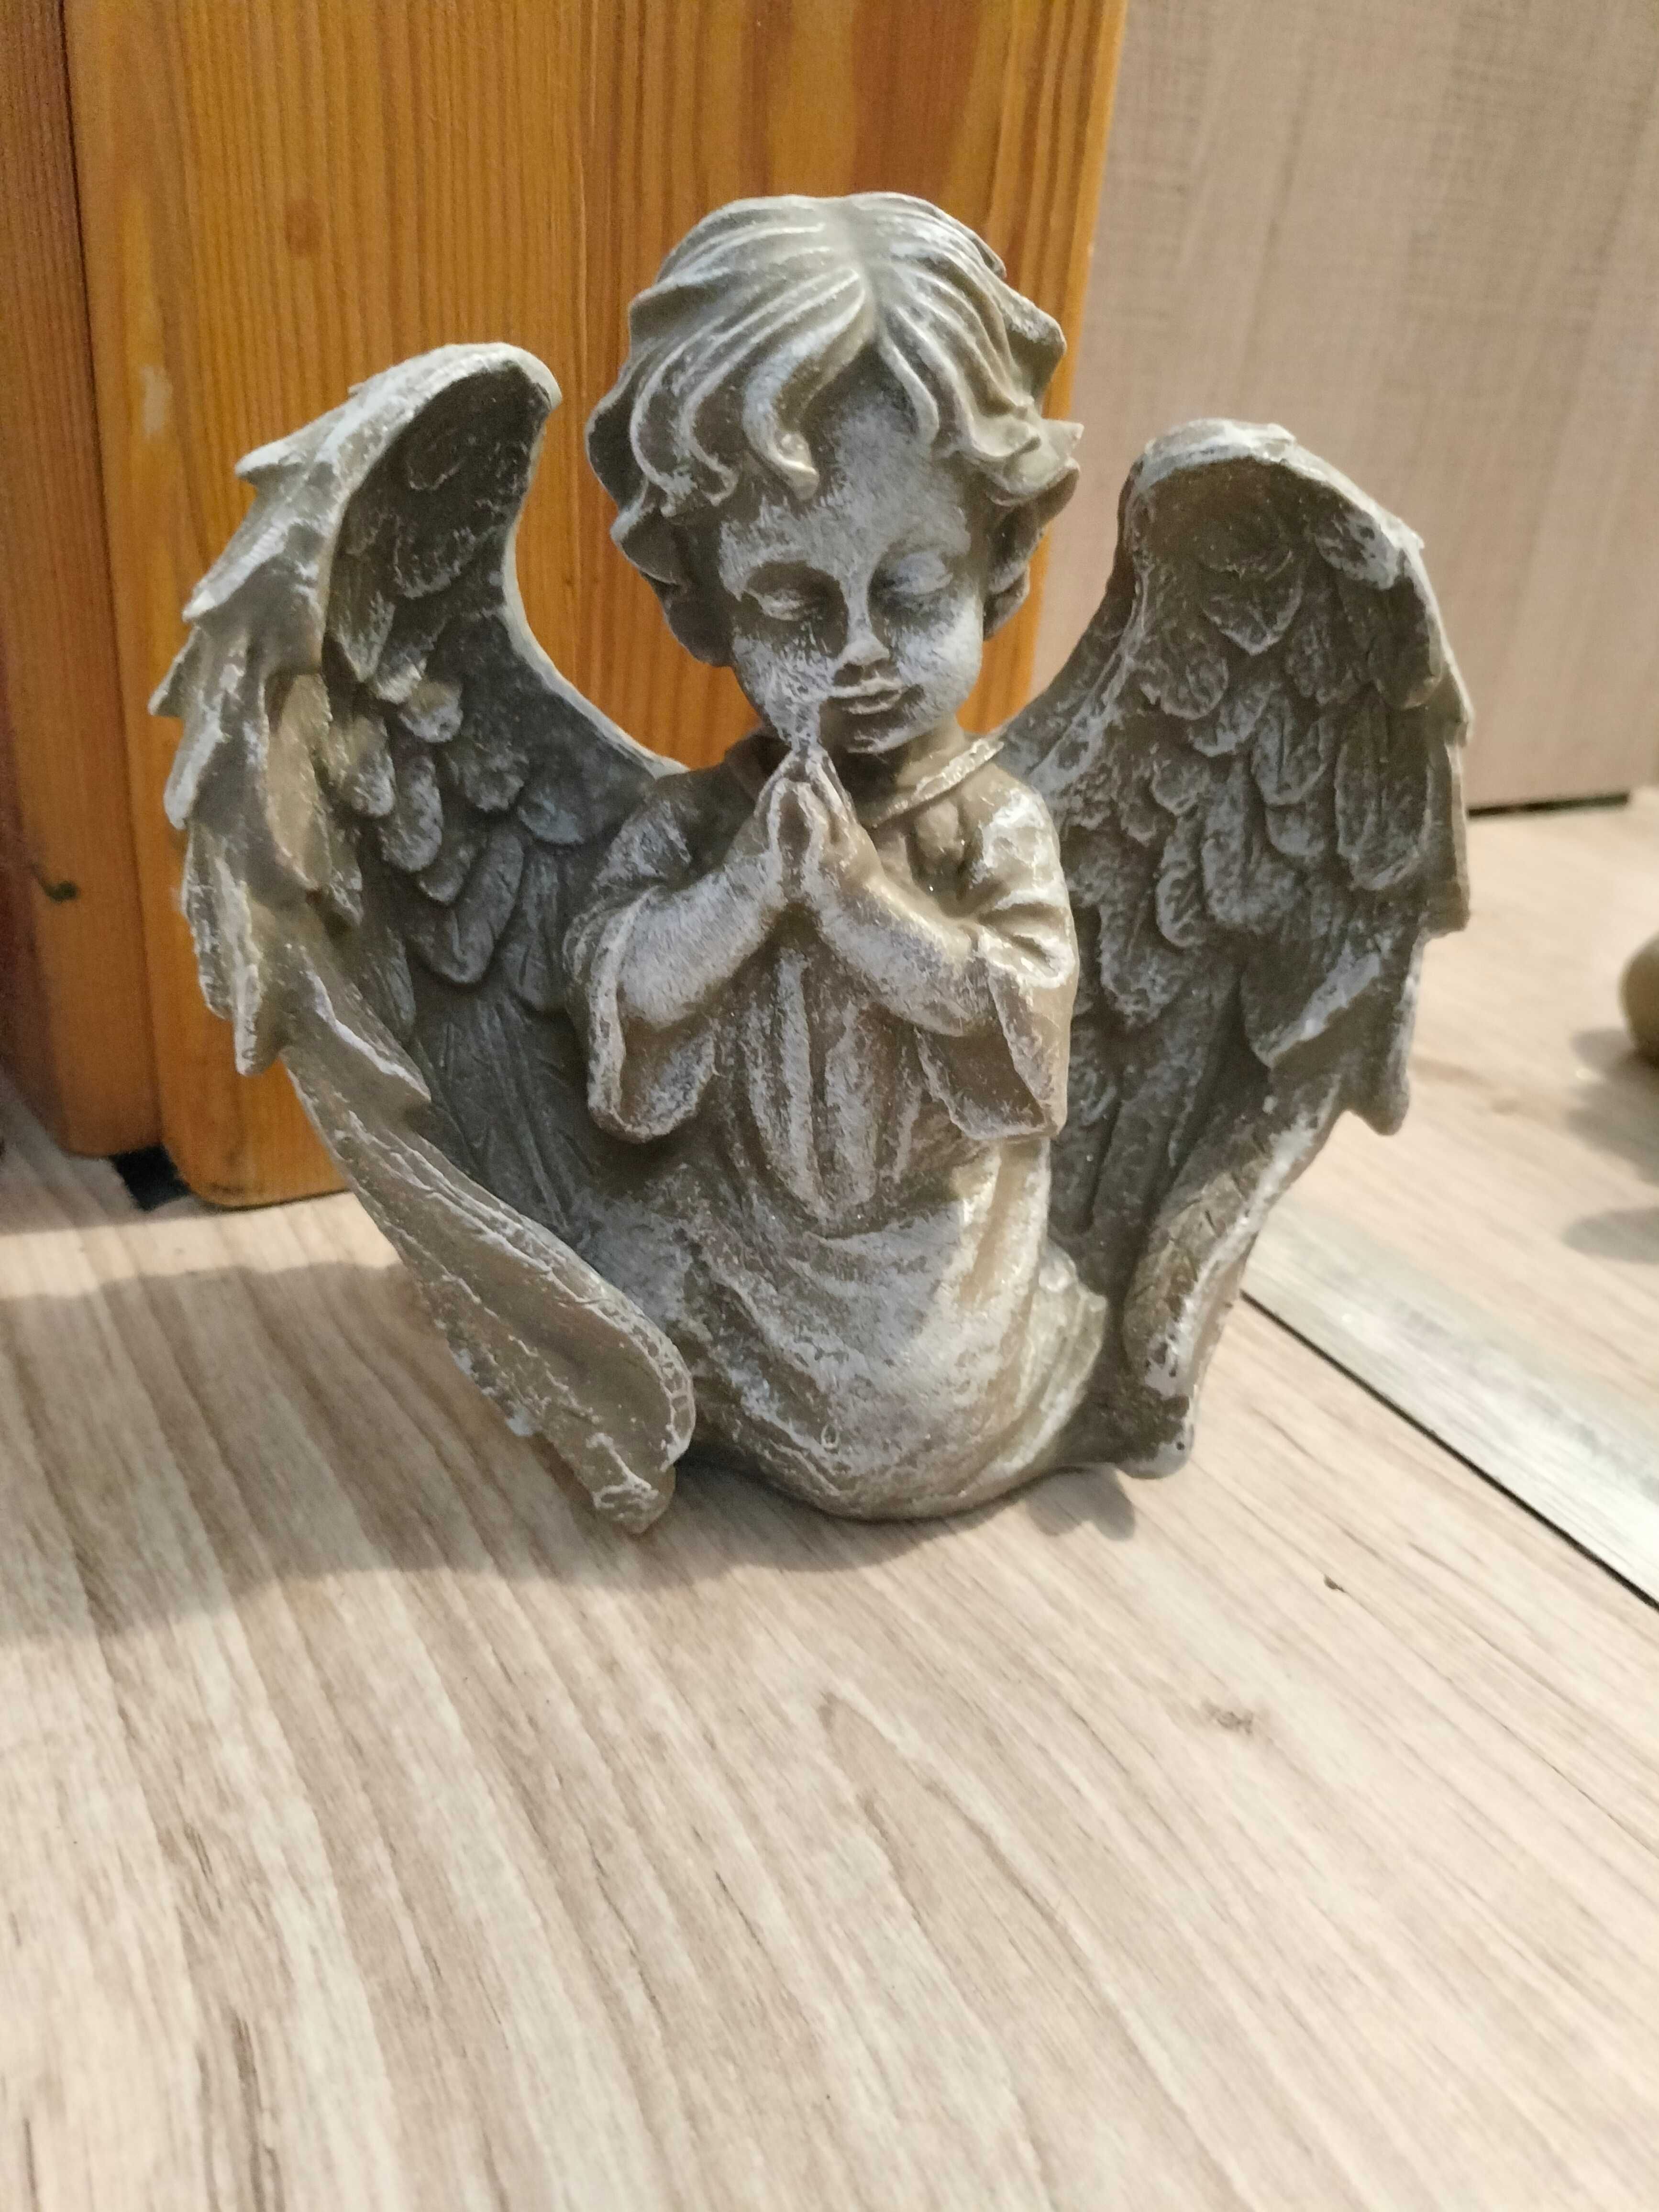 Aniołek ceramiczny